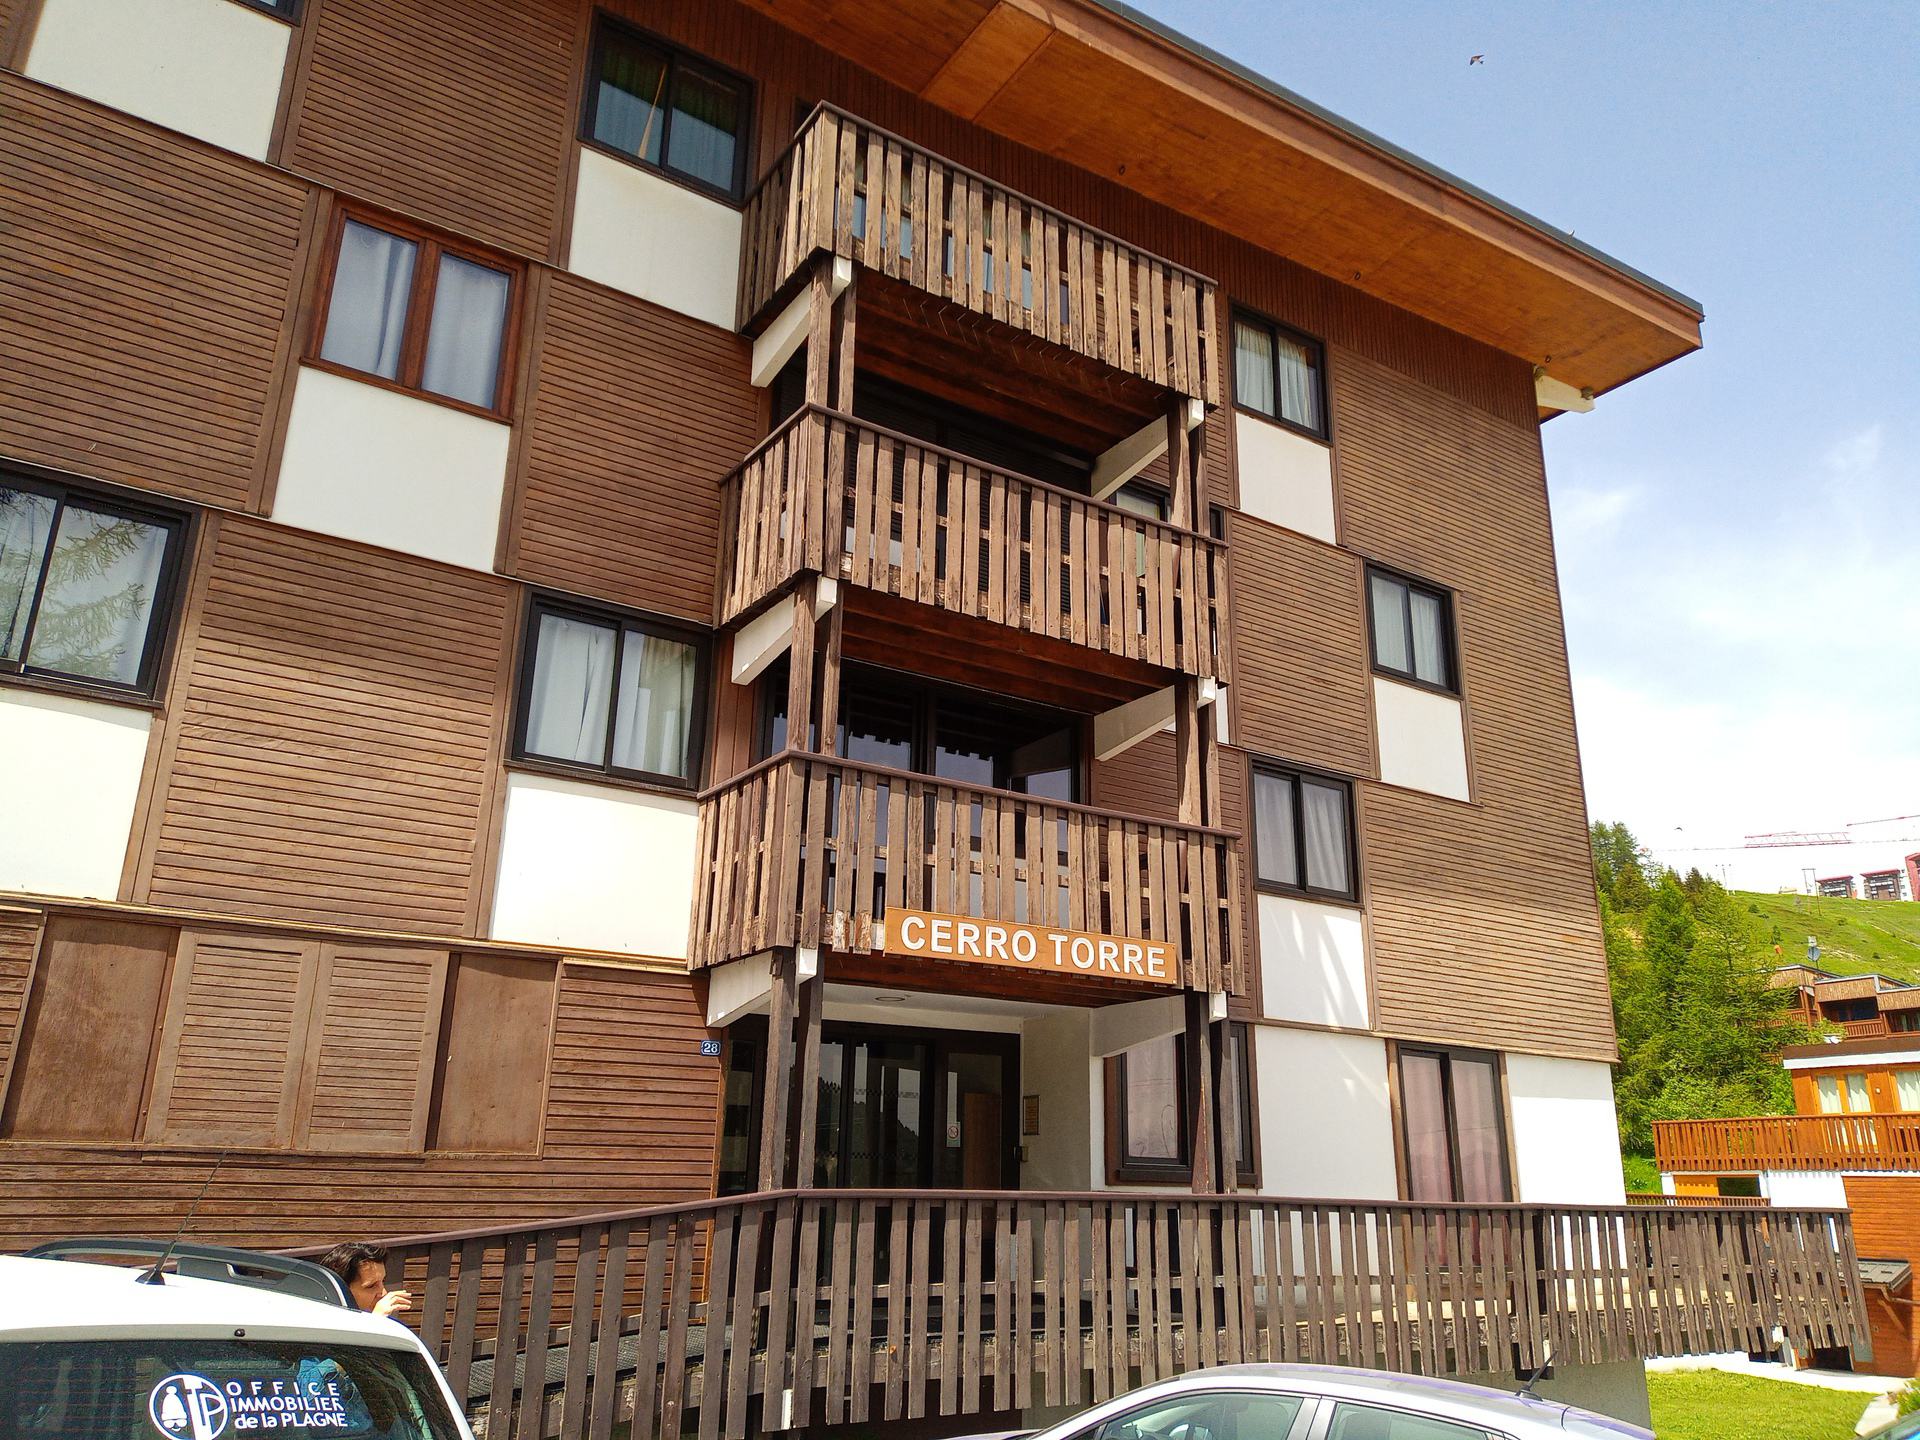 travelski home choice - Appartements CERRO TORRE - Plagne Centre